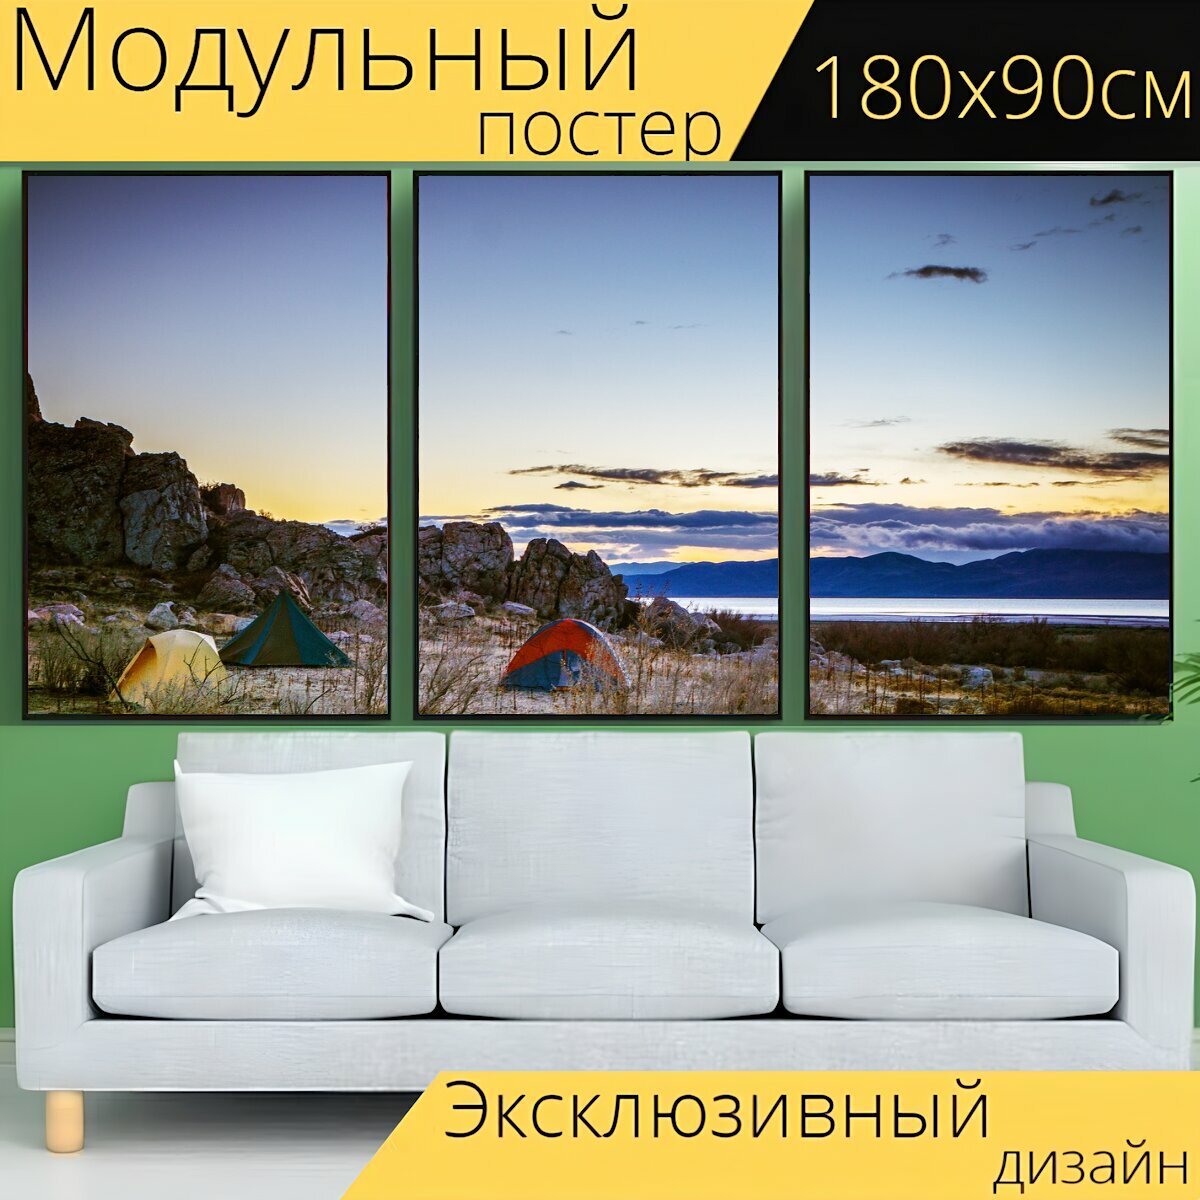 Модульный постер "Палатки, отдых на природе, пустыня" 180 x 90 см. для интерьера